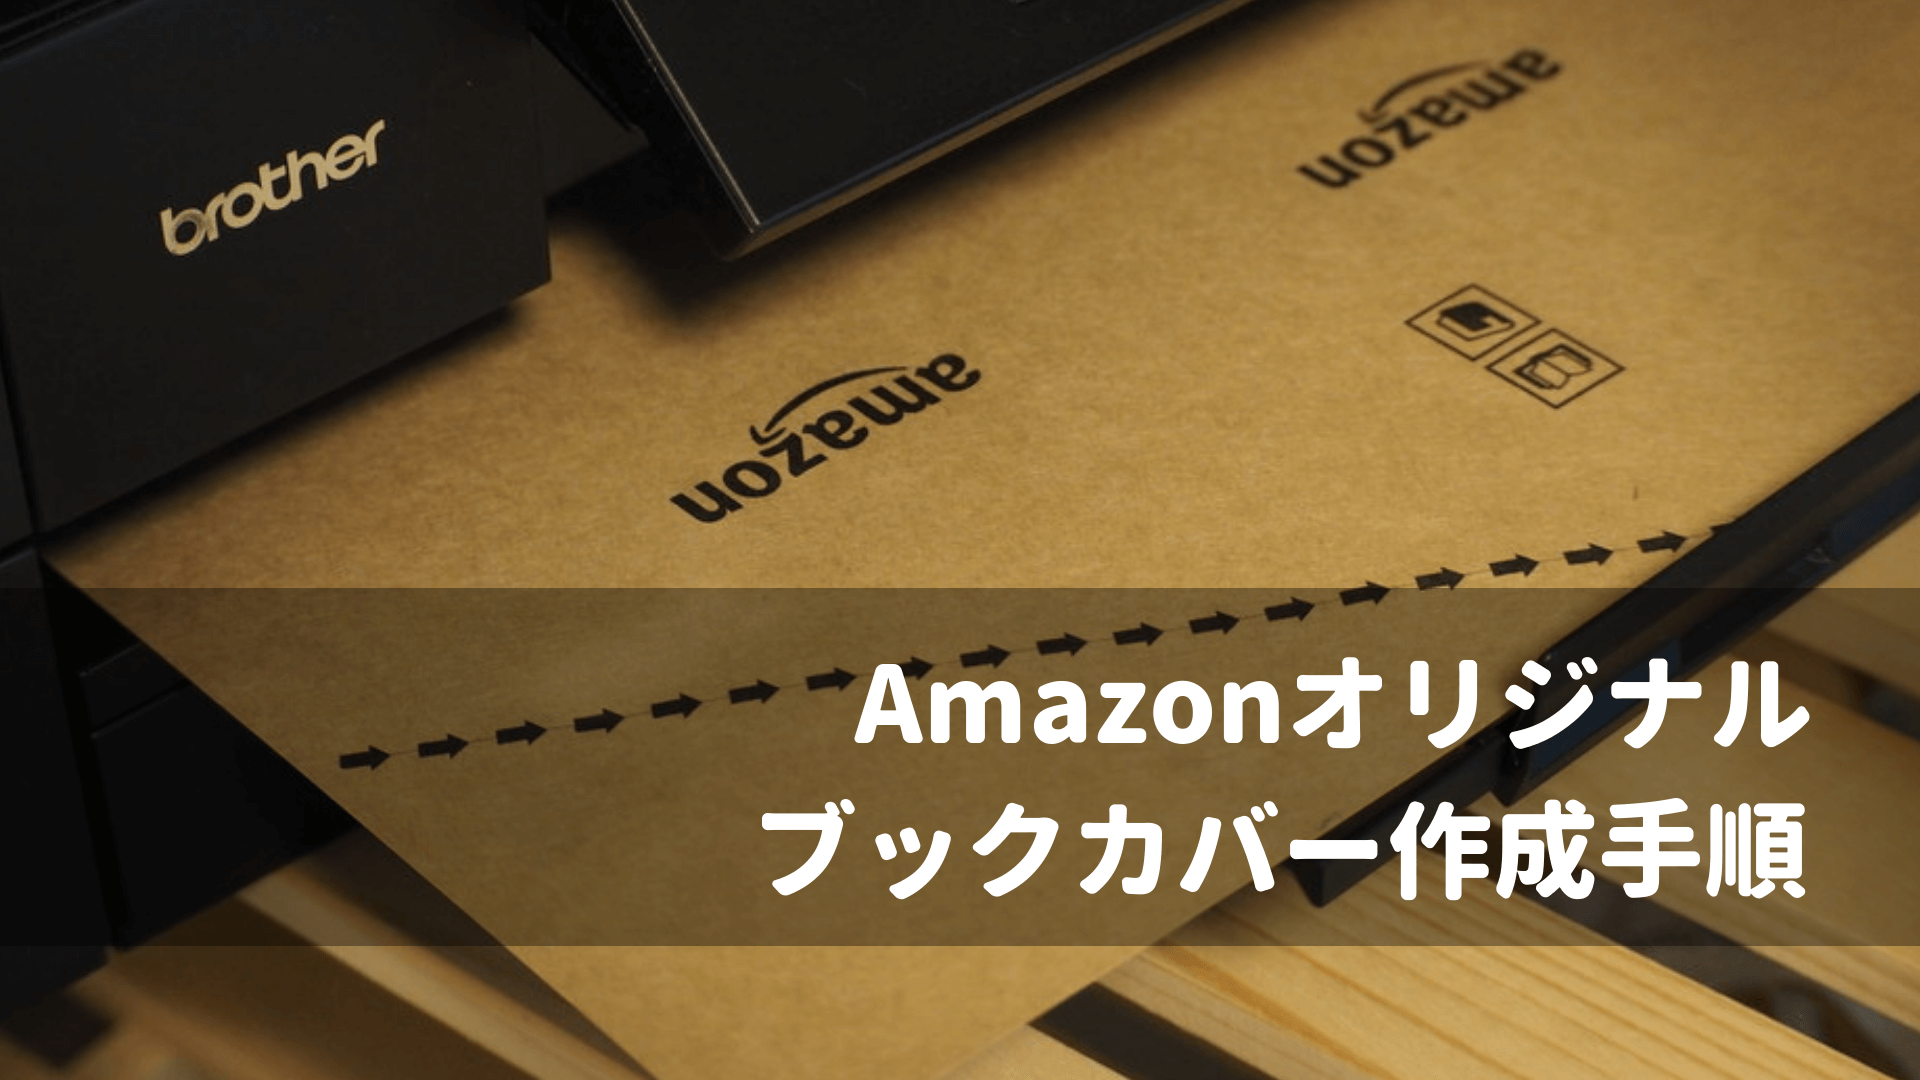 3分で出来る Amazonから無料でダウンロード おしゃれなブックカバーを自作する方法 Change For Future